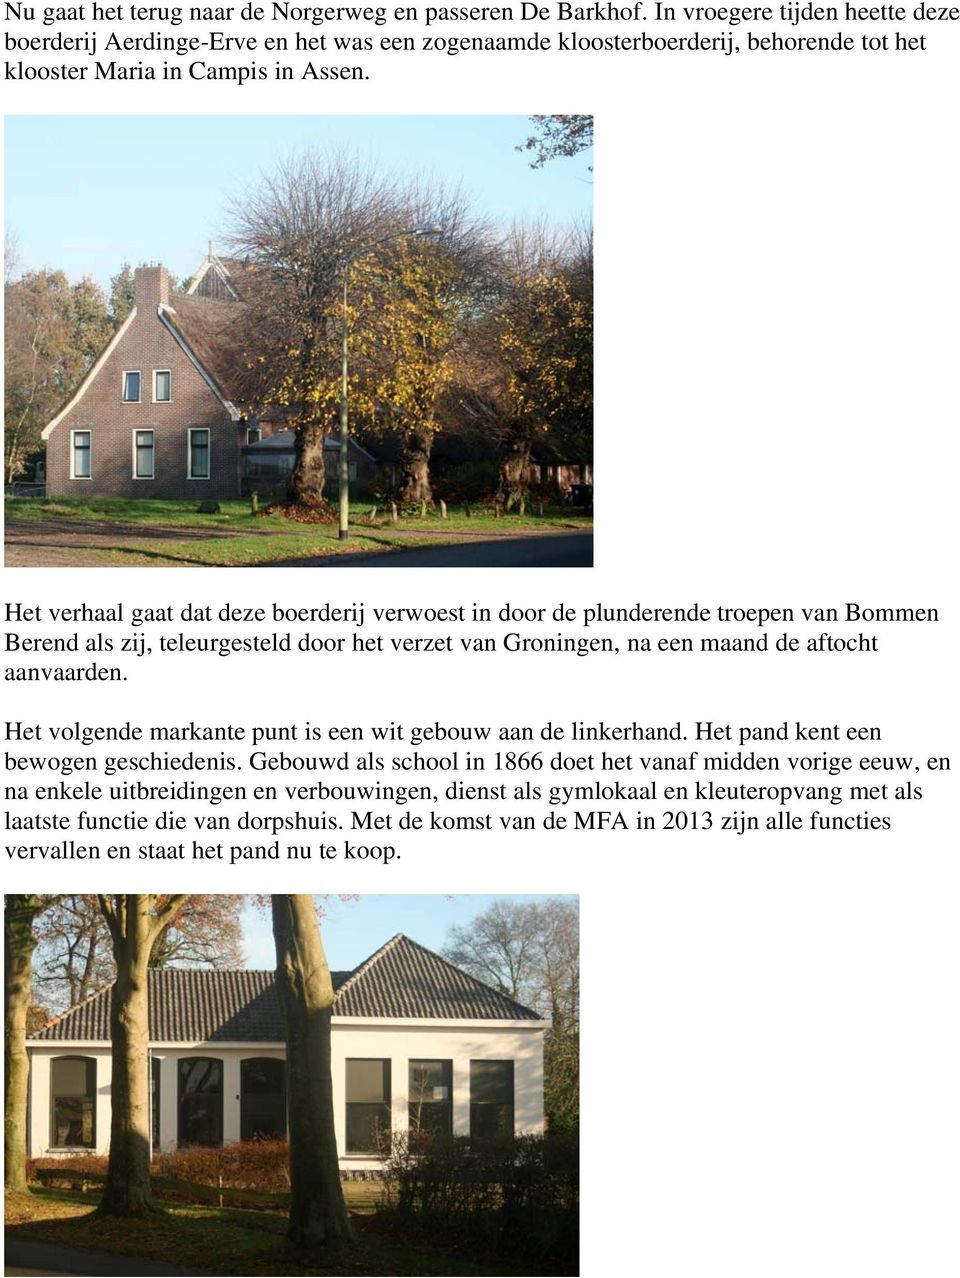 Het verhaal gaat dat deze boerderij verwoest in door de plunderende troepen van Bommen Berend als zij, teleurgesteld door het verzet van Groningen, na een maand de aftocht aanvaarden.